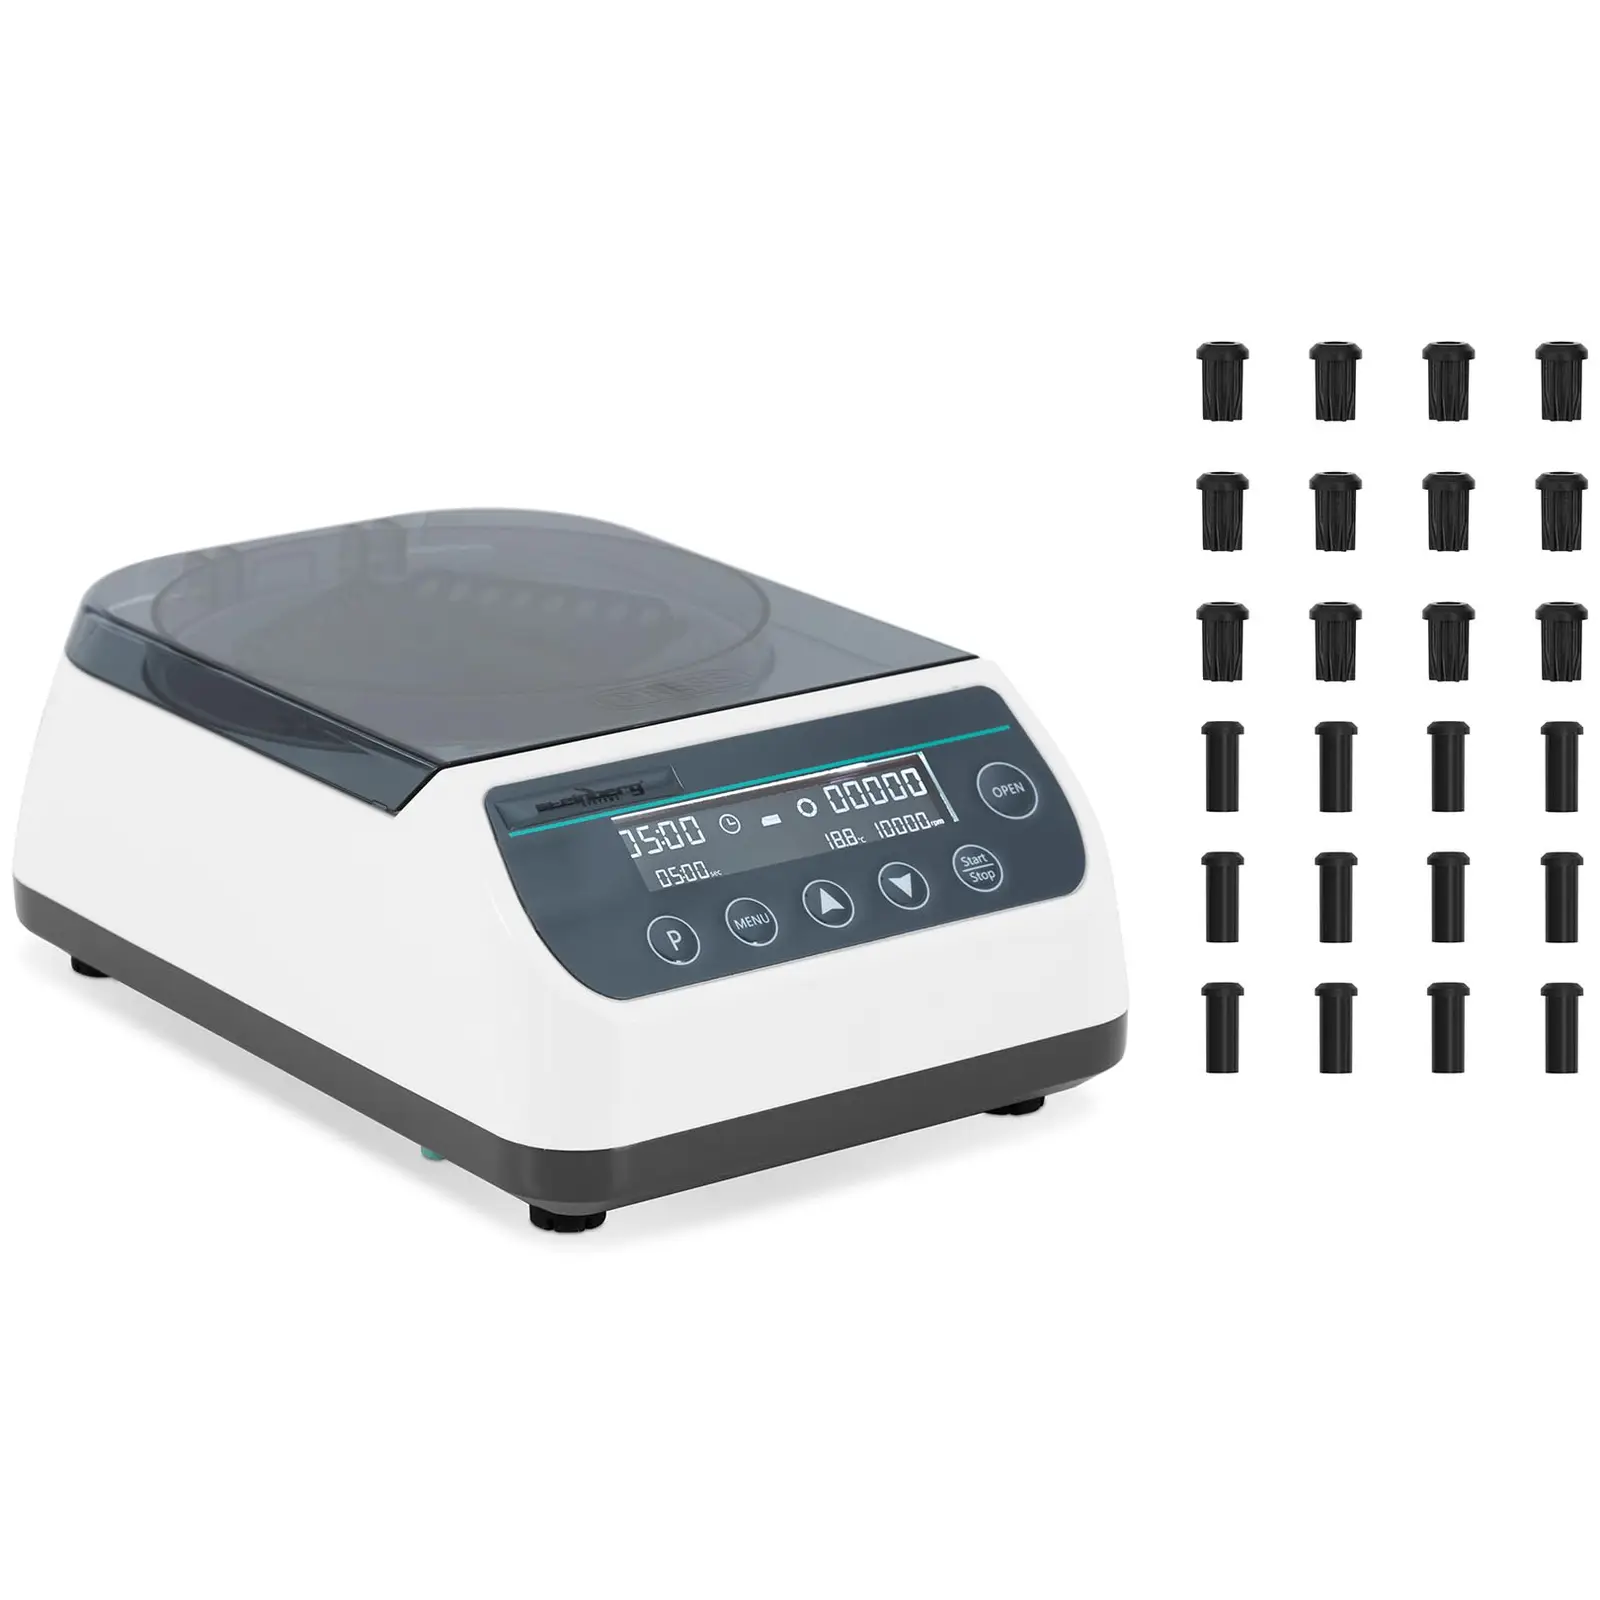 Centrifugeuse de laboratoire - Haute vitesse - Rotor 2-en-1 - 10 000 tr/min - pour 12 tubes / 4 barrettes PCR - FCR 6708 xg